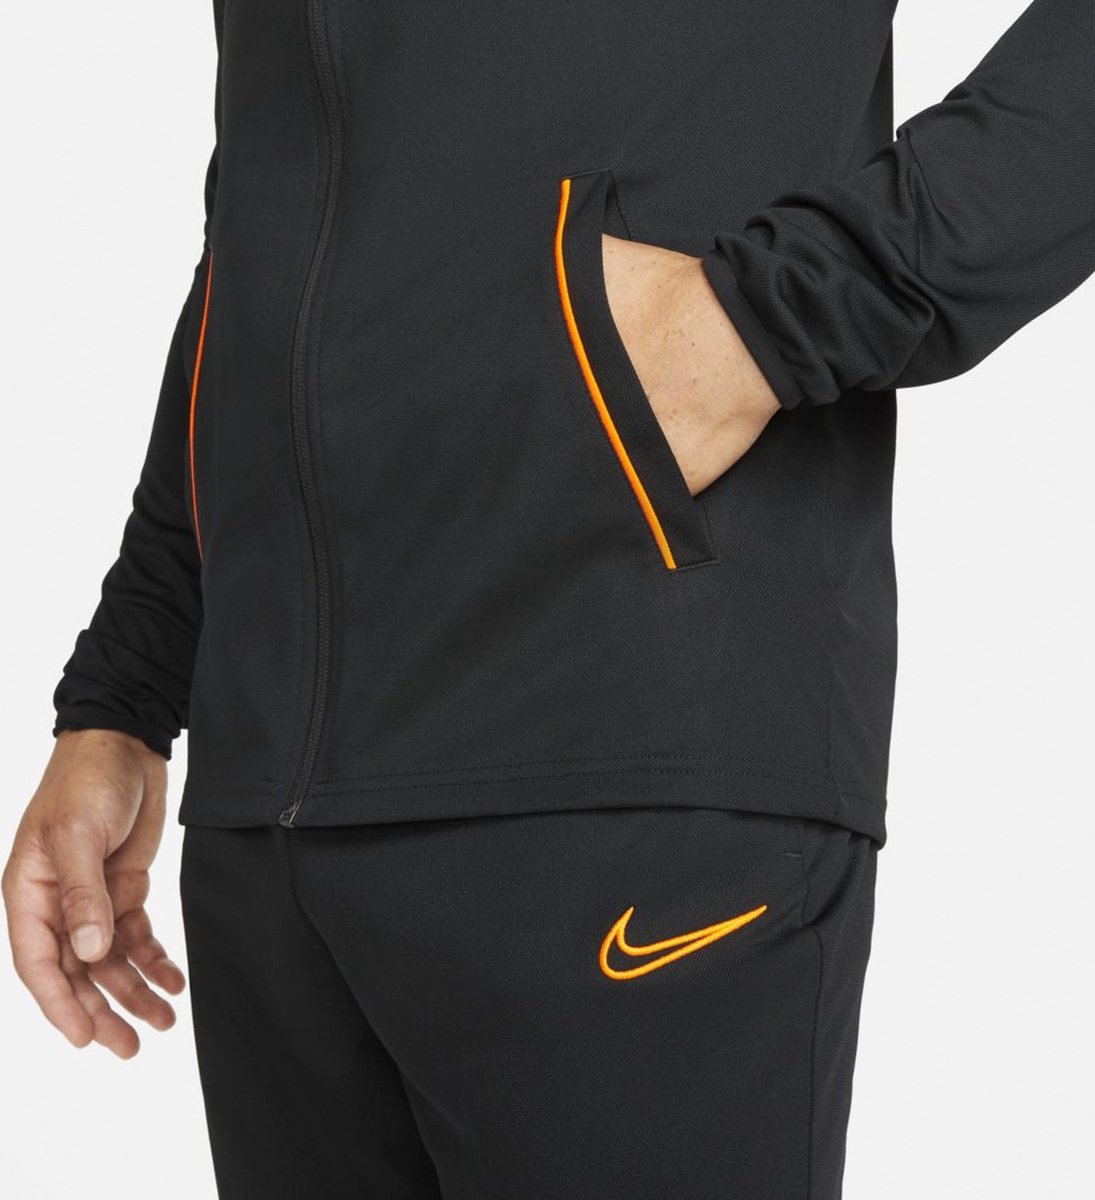 Survêtement Nike Dri- FIT Academy 21 - Taille XL - Homme - Noir